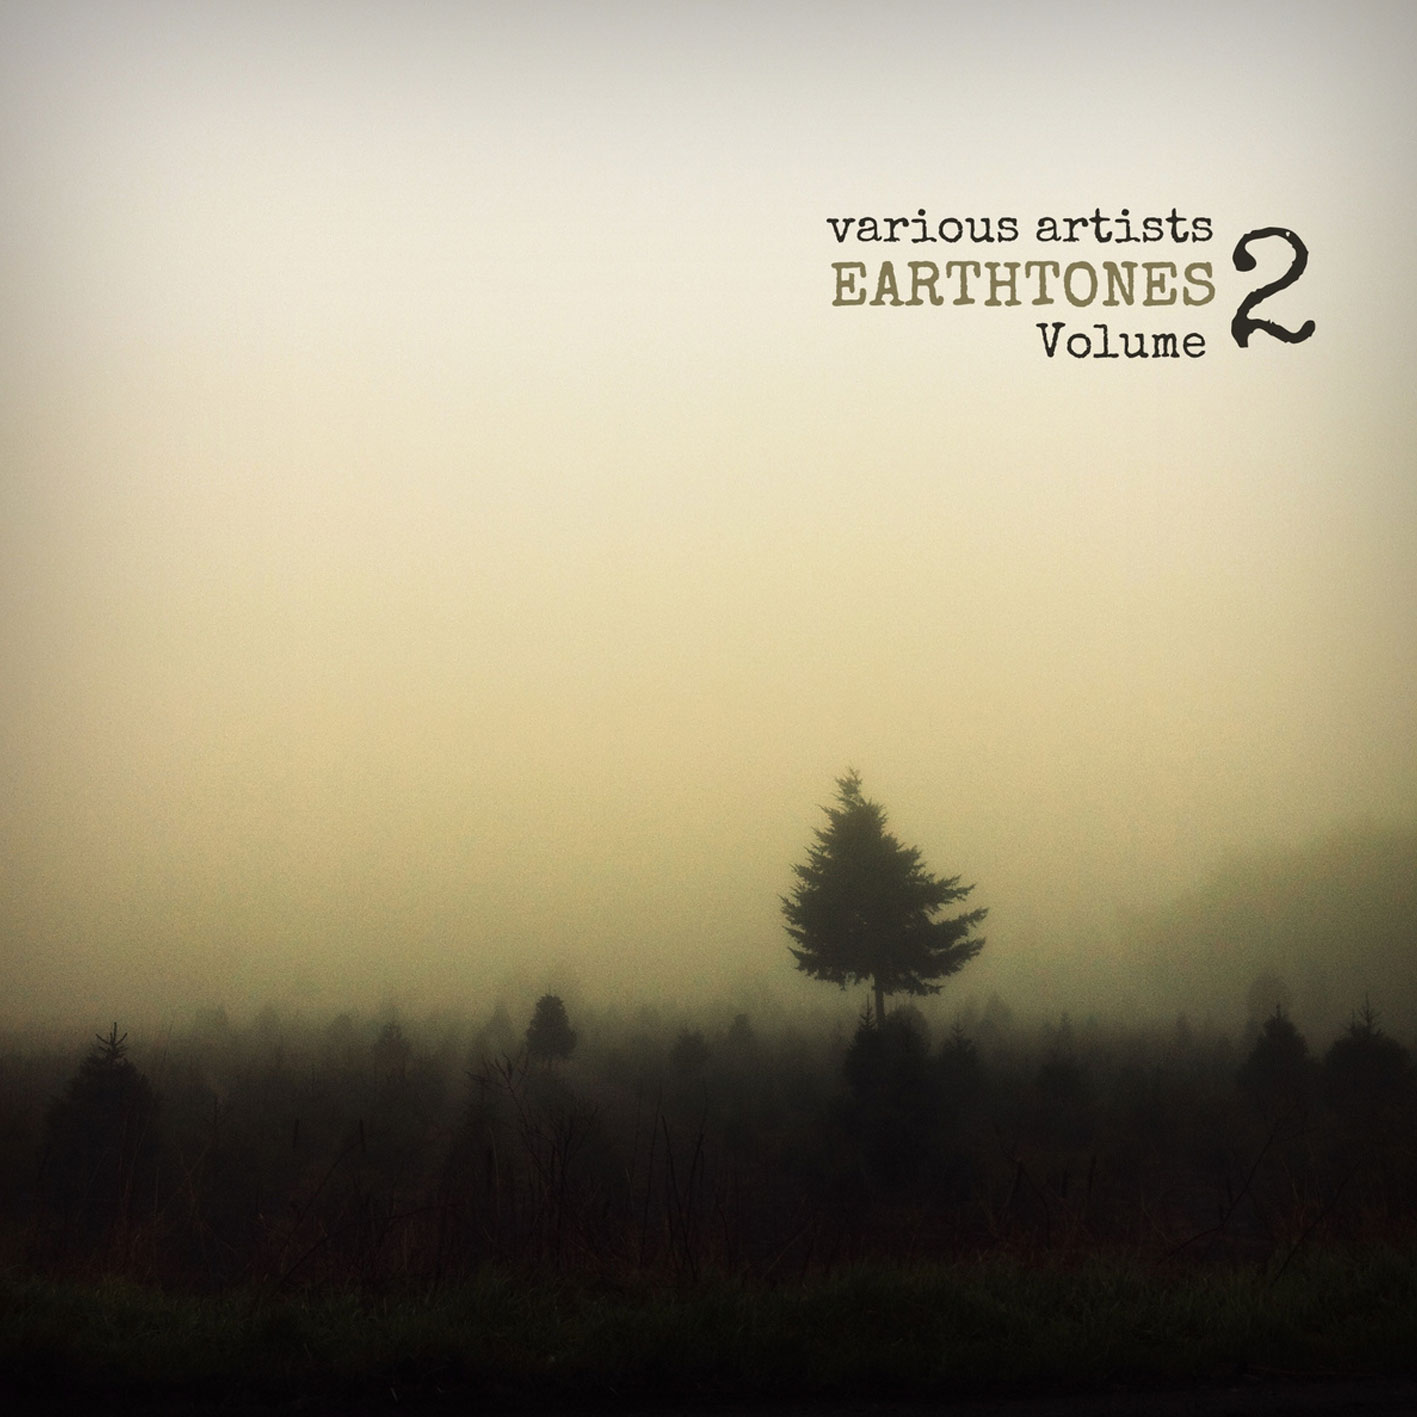 earthtones volume 2 - cover